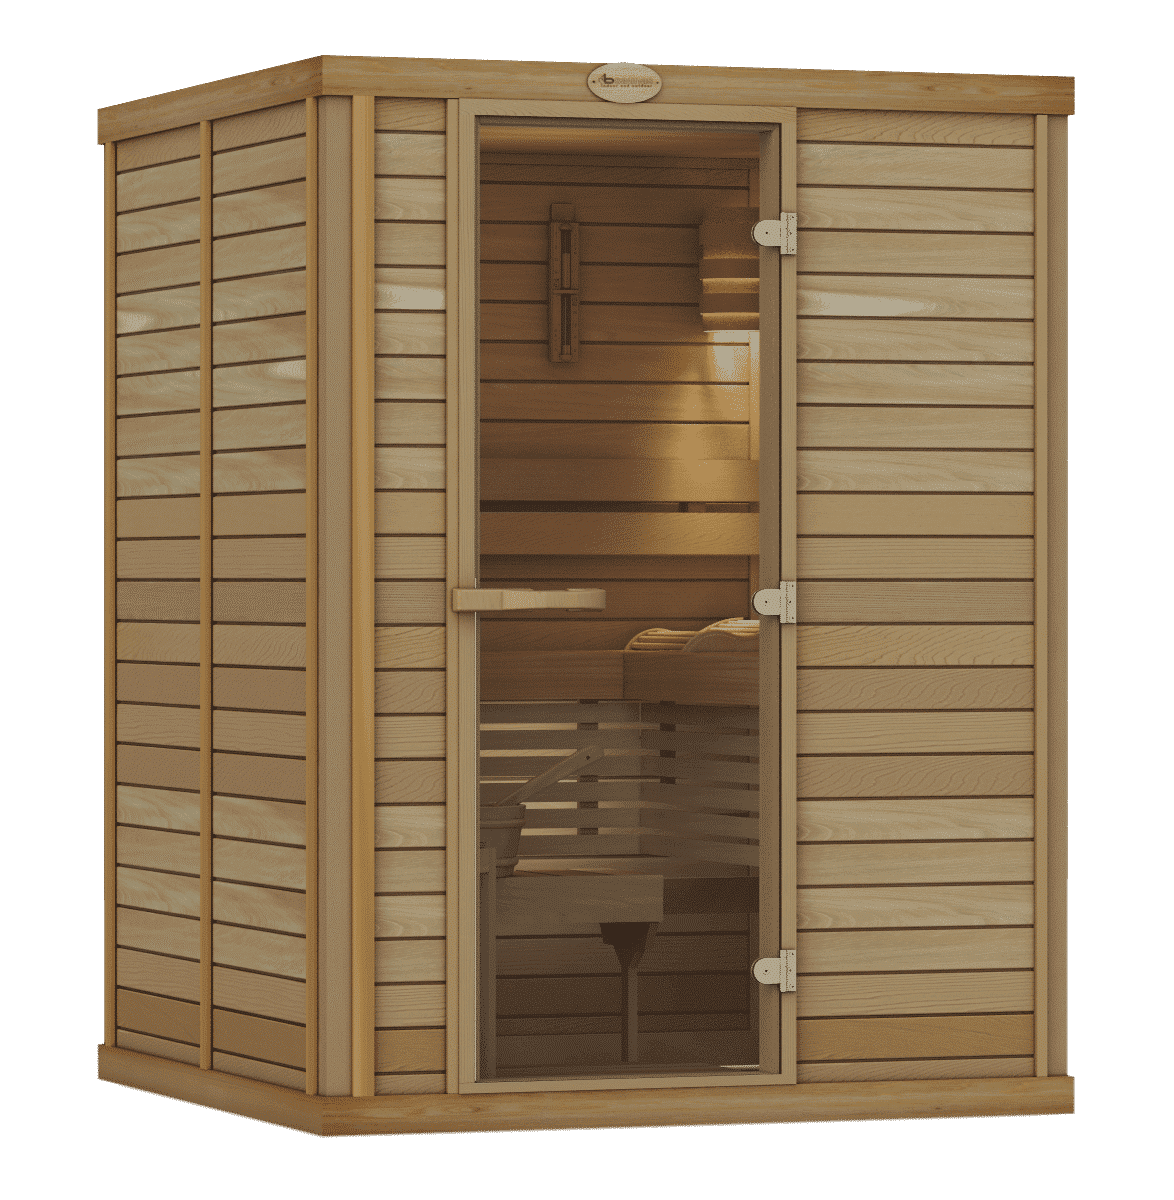 1616 Cedar Indoor Prefab Sauna Room Sale Canada Usa 